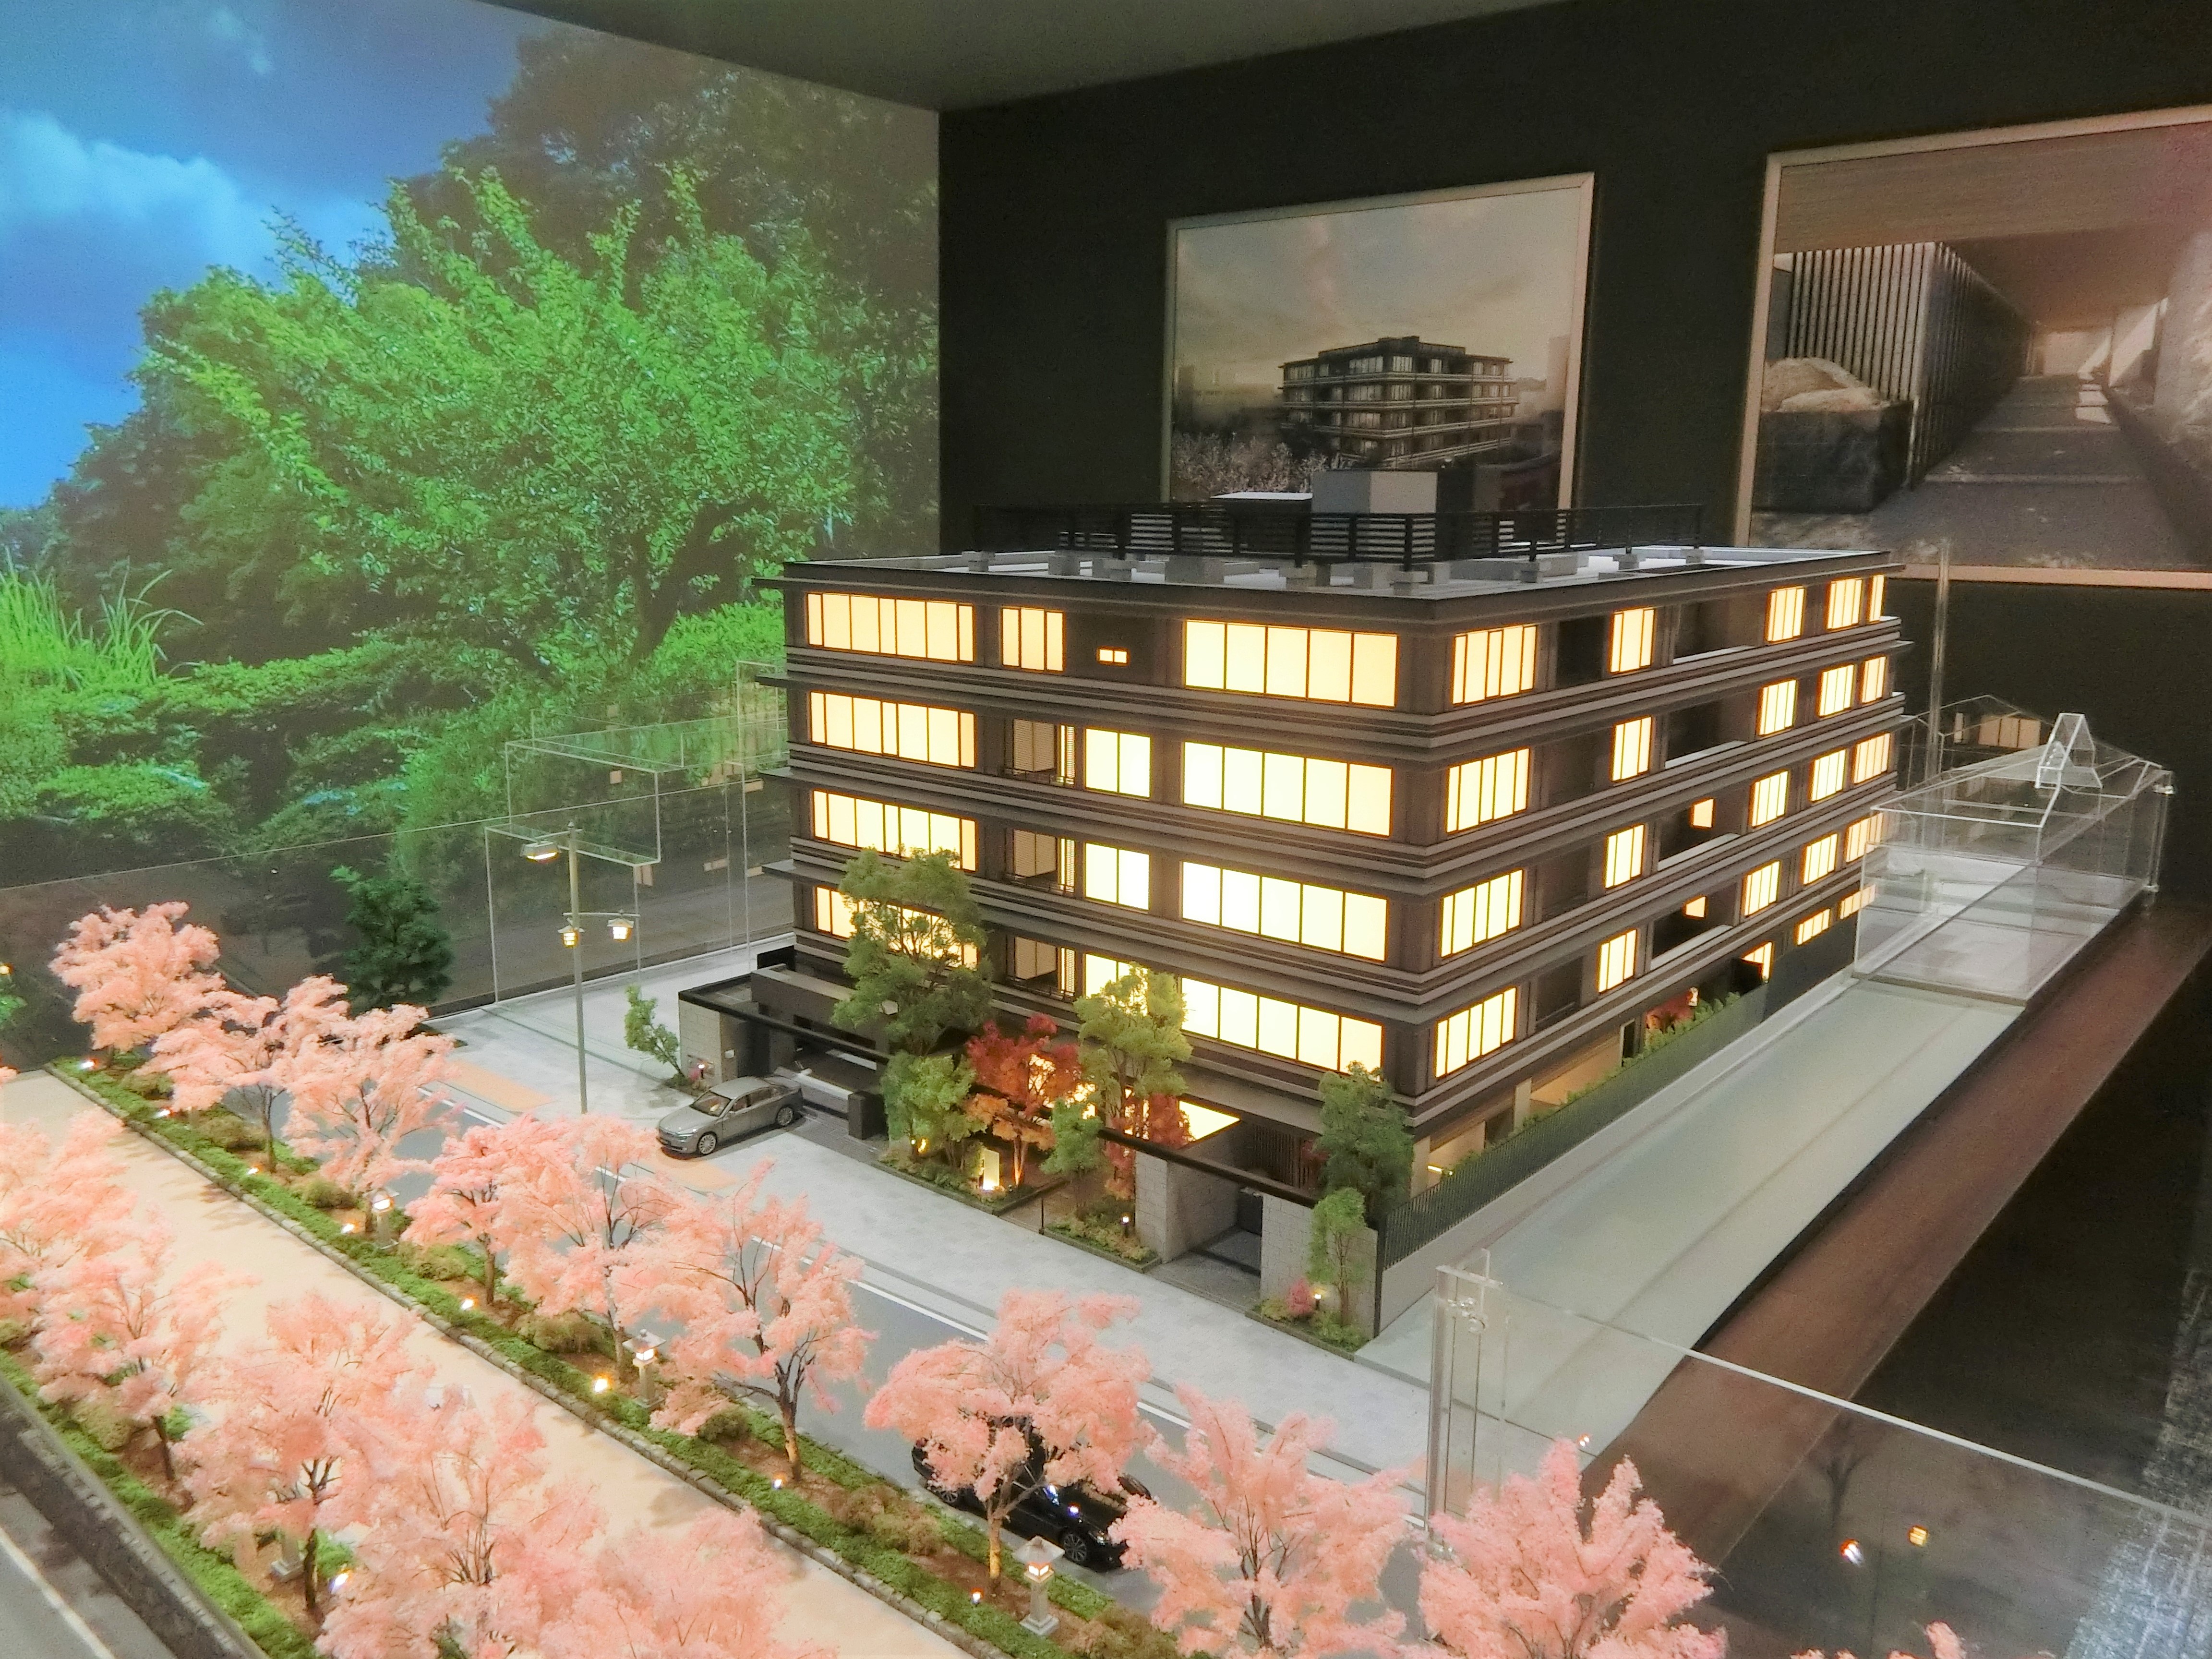 「ザ・パークハウス 鎌倉」の完成予想模型